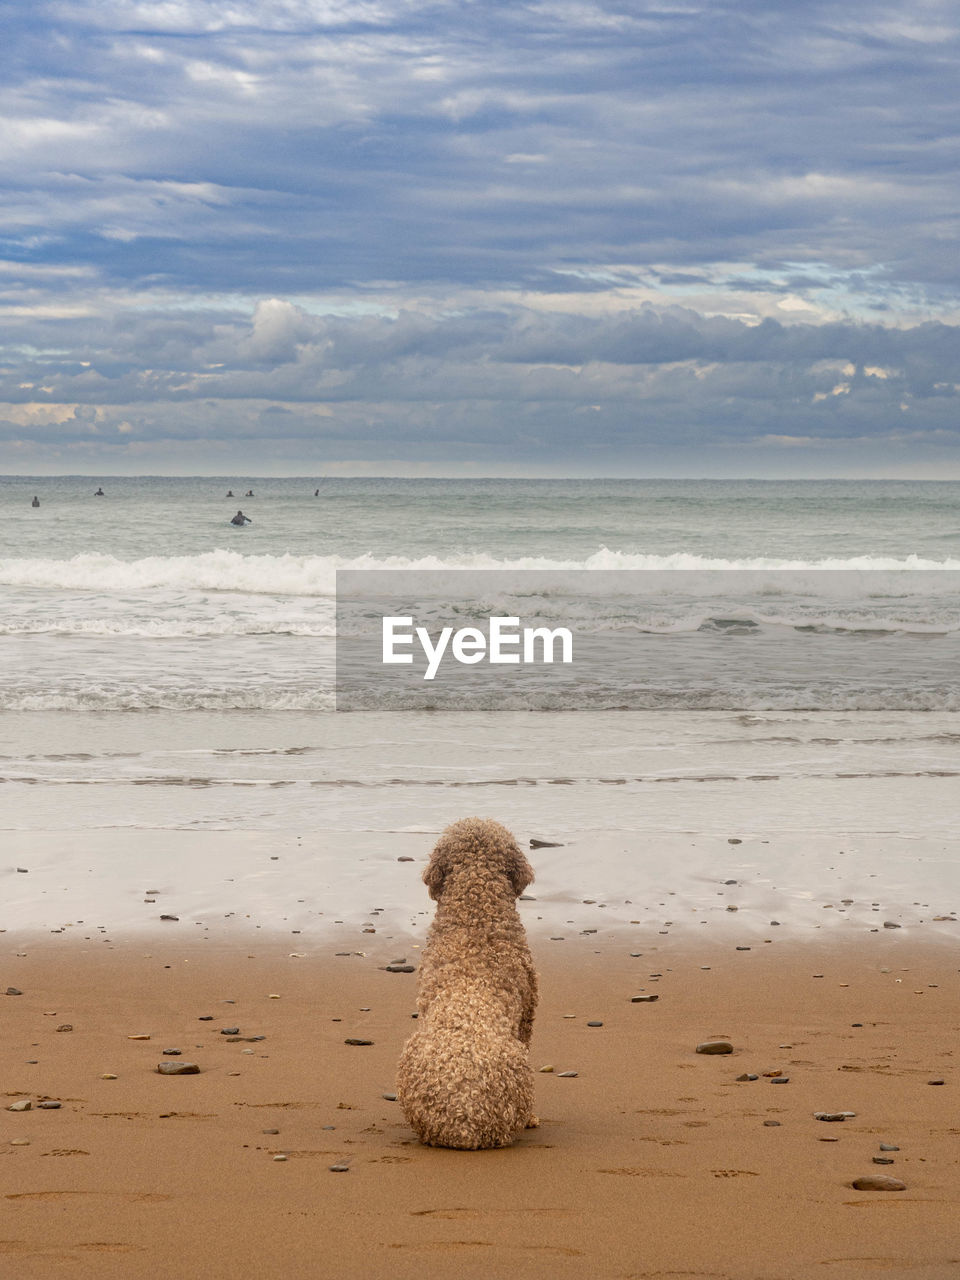 Dog looking at the sea waiting its master